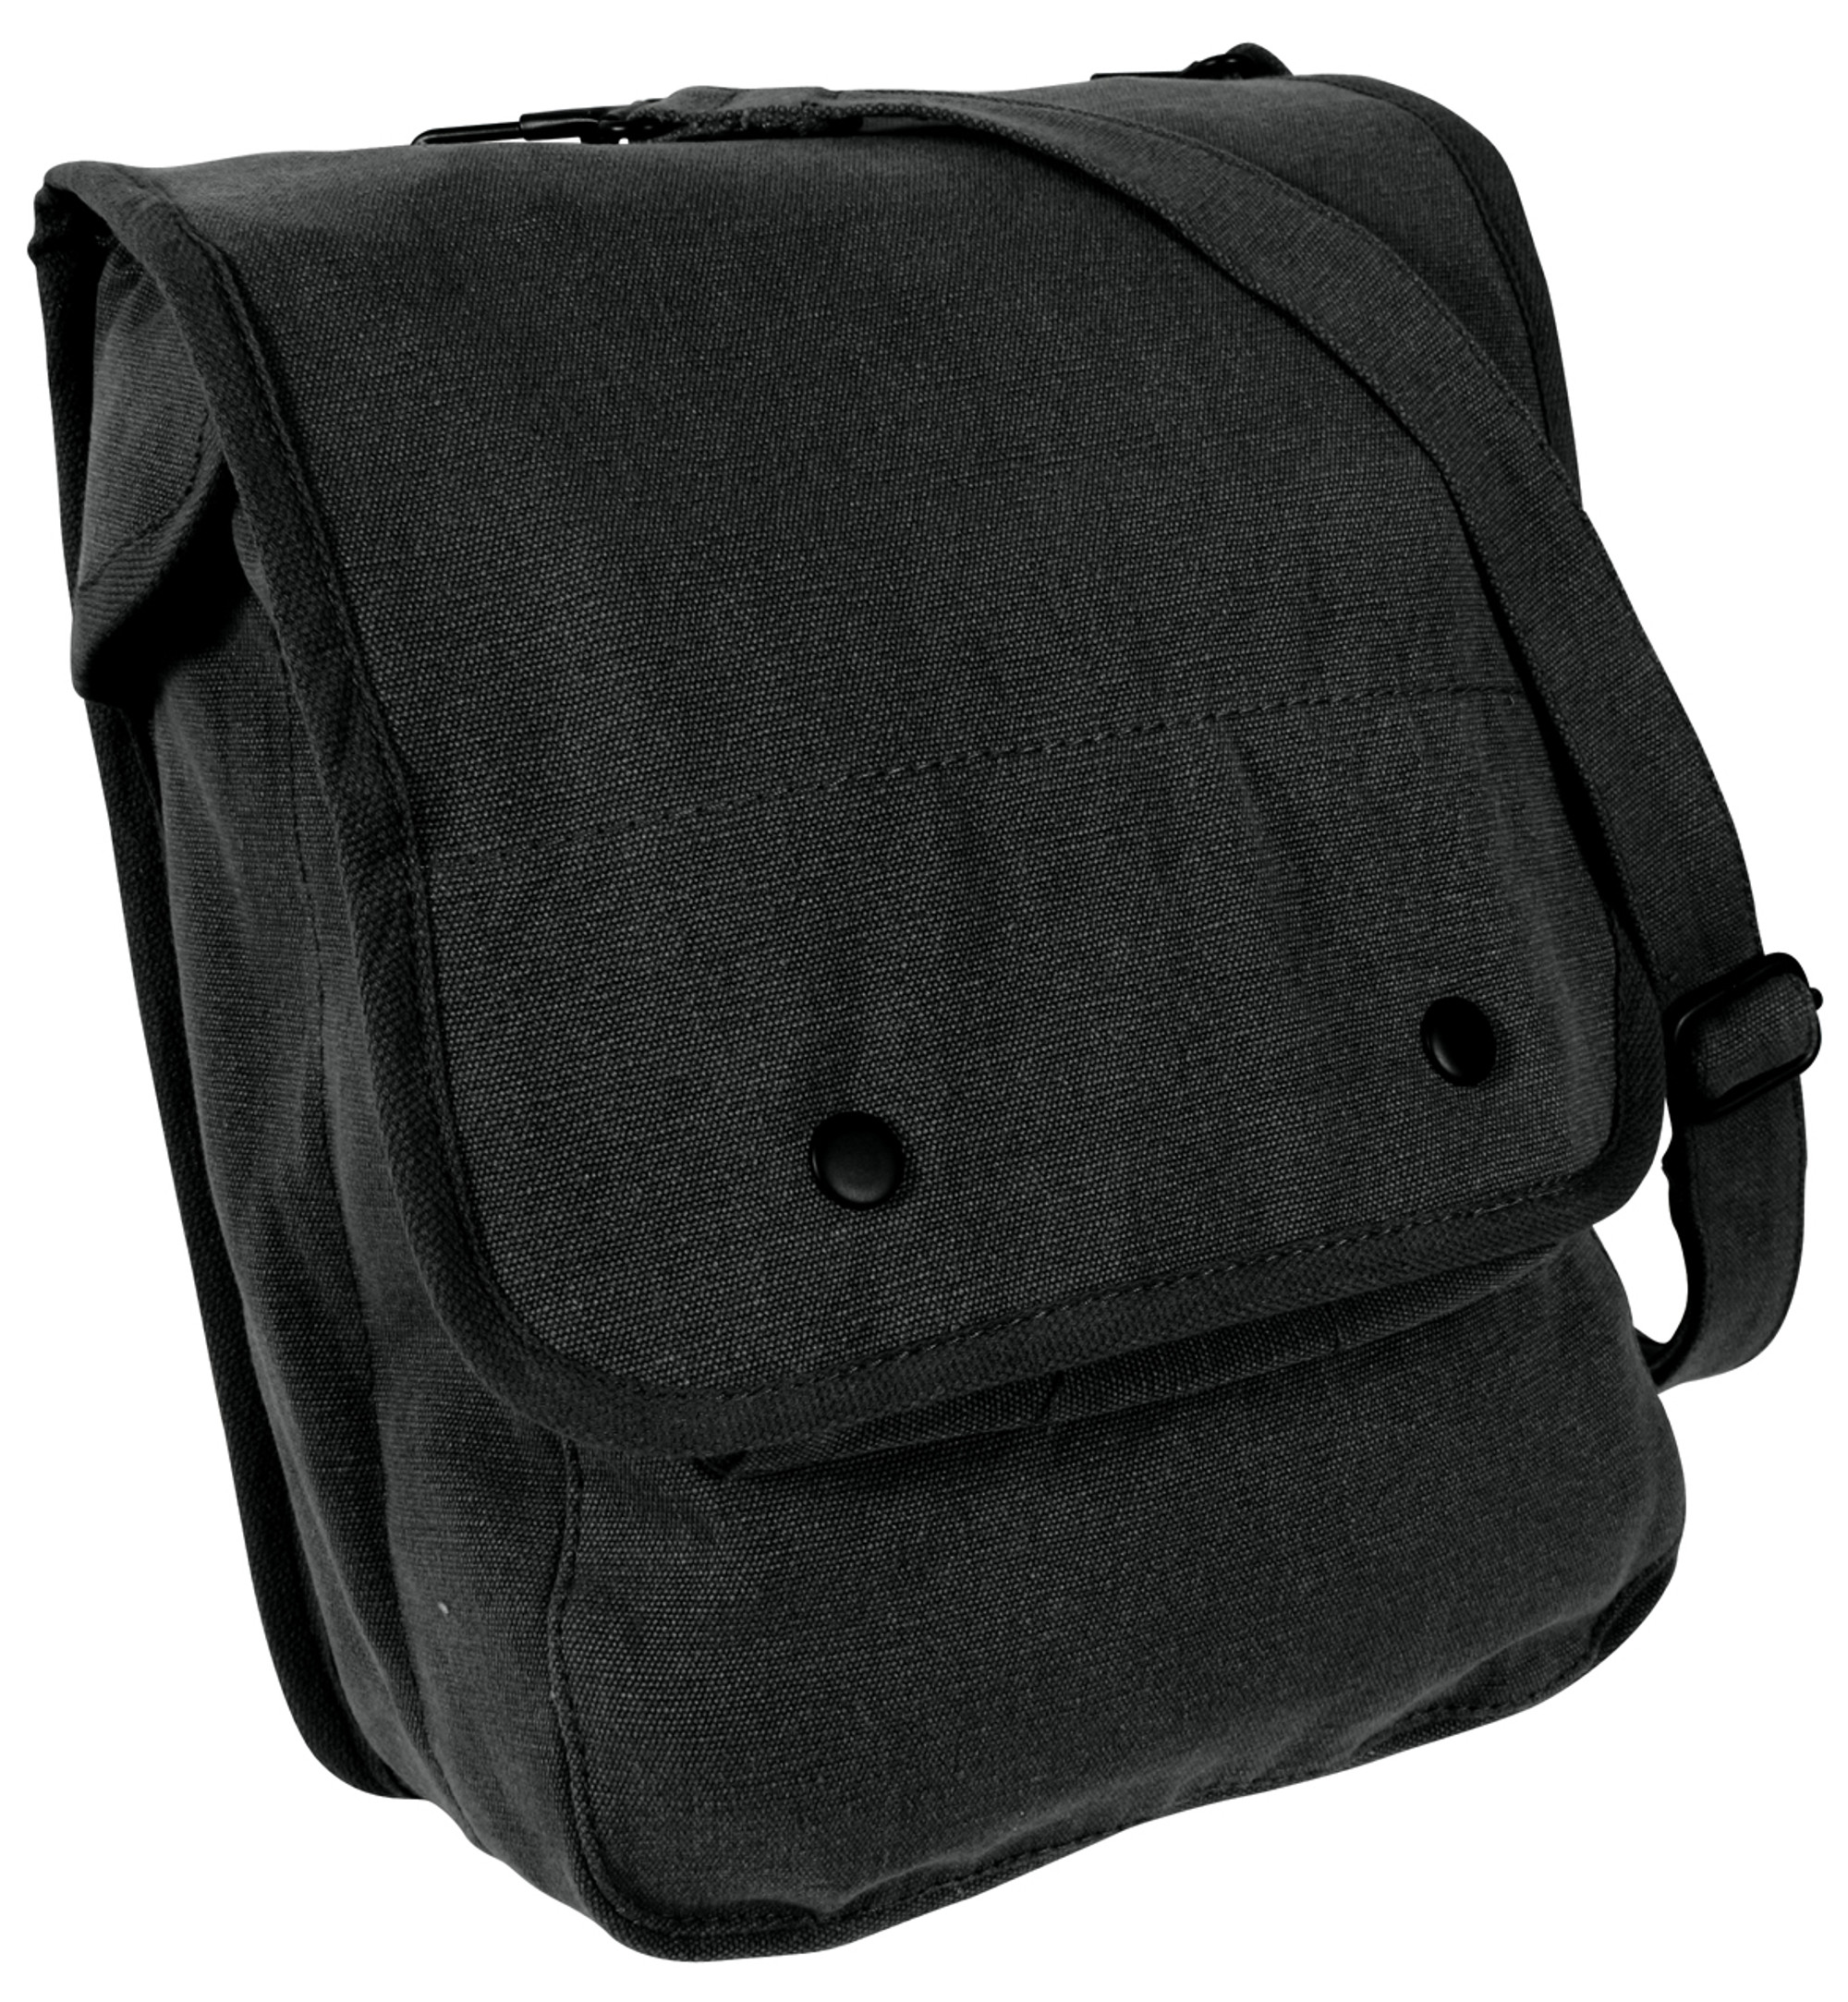 Rothco Canvas Map Case Shoulder Bag - Black